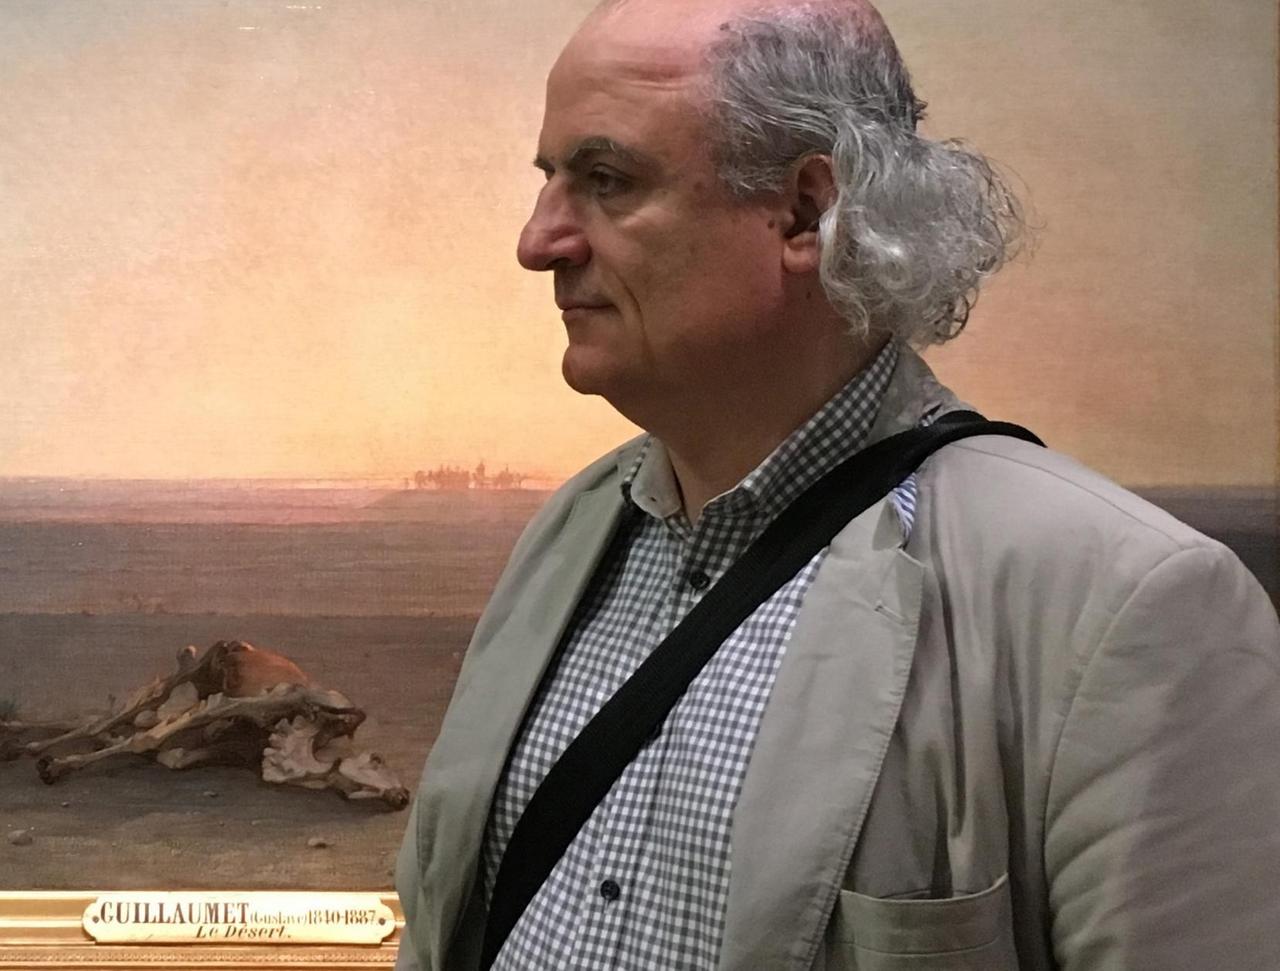 Nasser Rabbat vor dem Bild "Le desert" von Guillaumet im Musée d'Orsay.